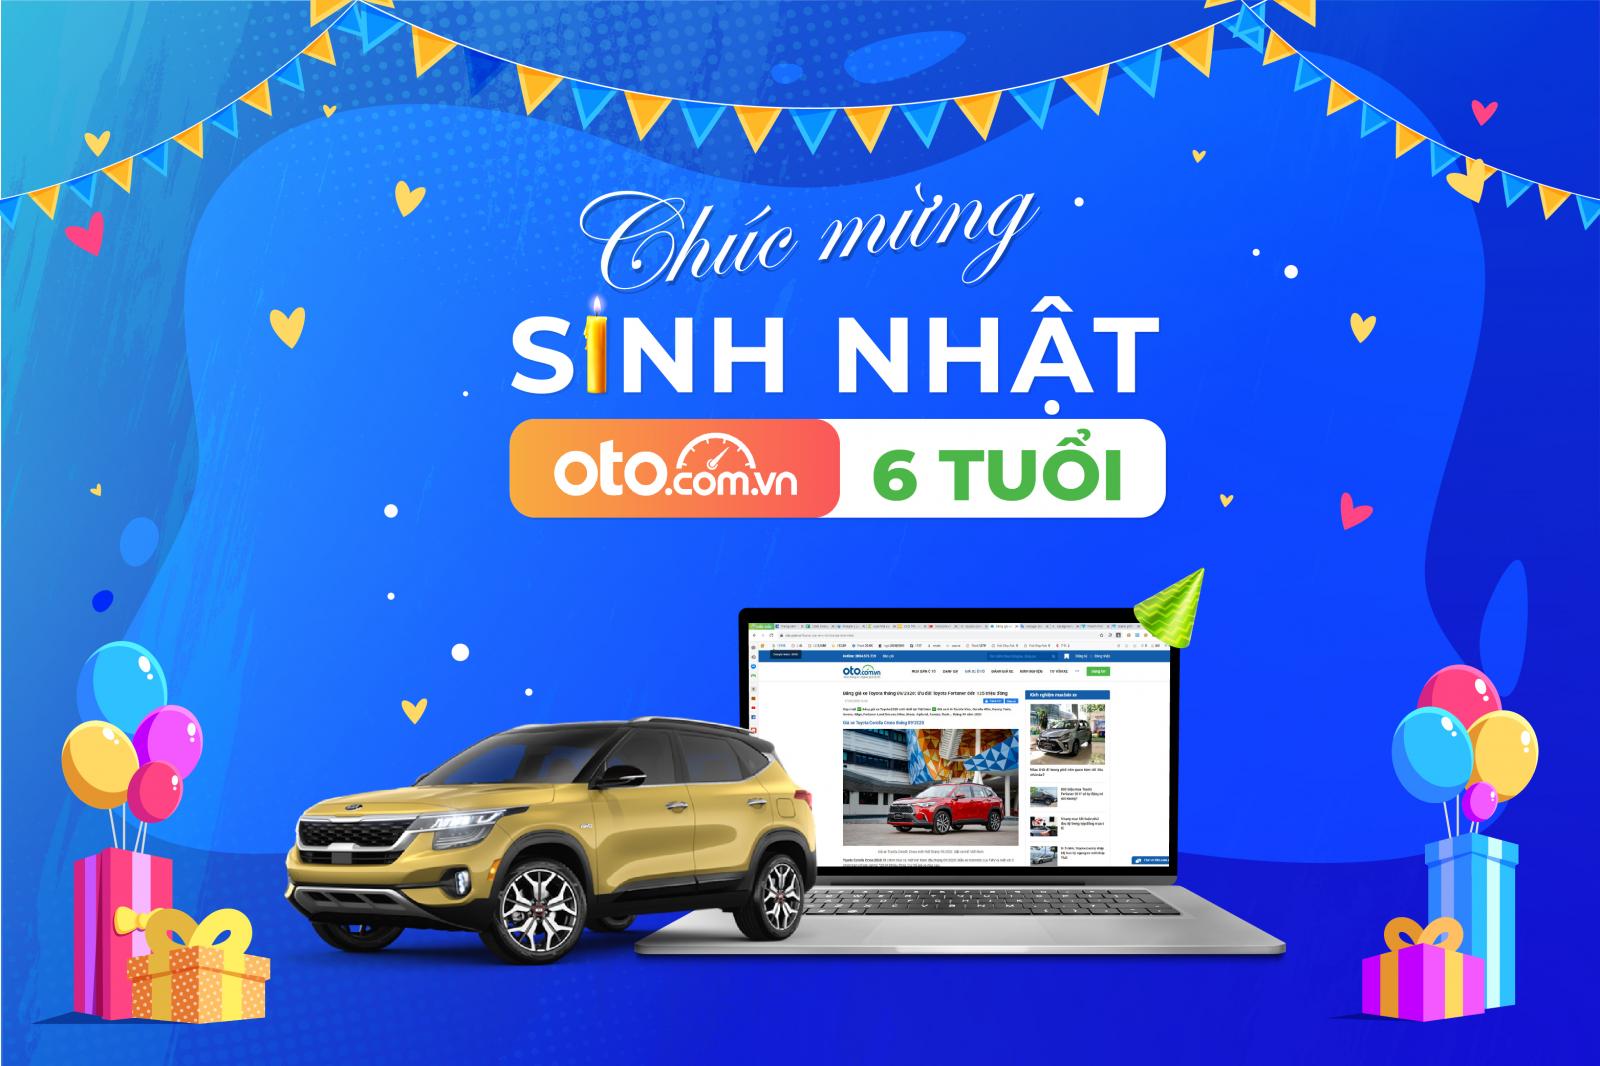 Oto.com.vn triển khai chương trình hỗ trợ khách hàng lớn nhất trong năm.